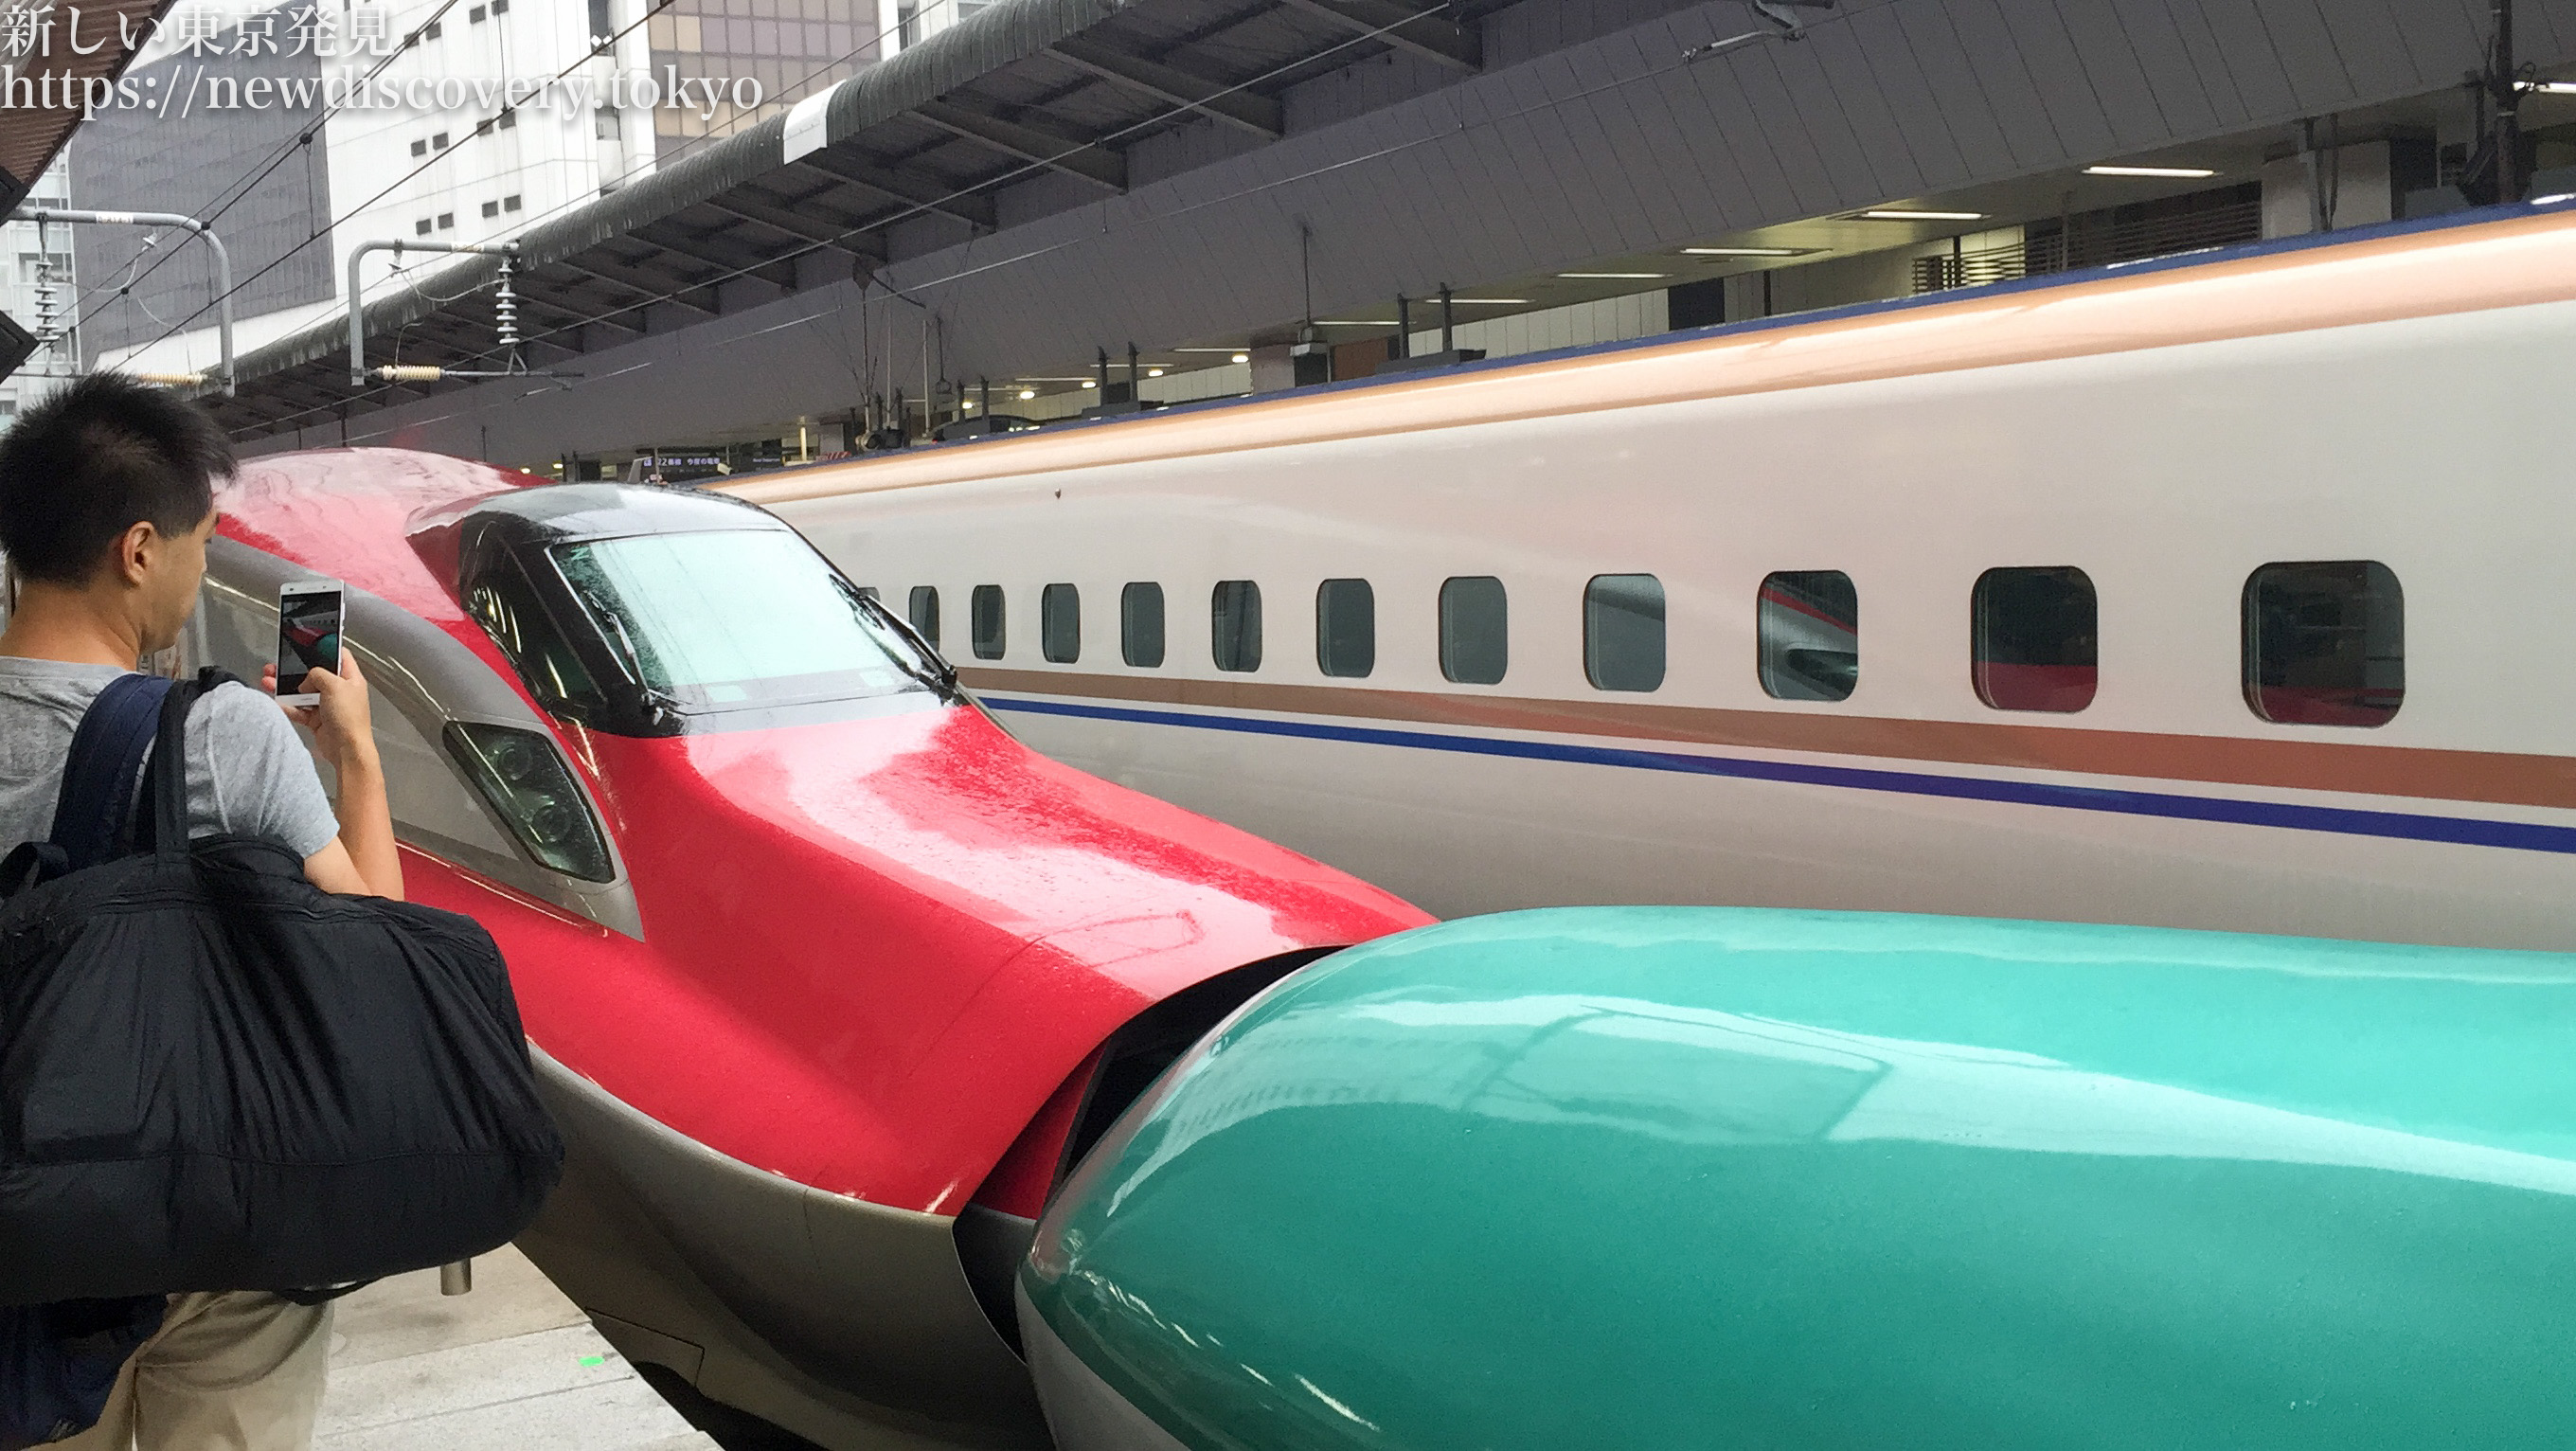 子鉄トレインビュースポット 東京駅で 電車好きな子供と新幹線をたっぷり見よう はやぶさ こまち 連結や かがやきなども見れるよ 子連れパパママを応援する情報チャンネル 新しい東京発見